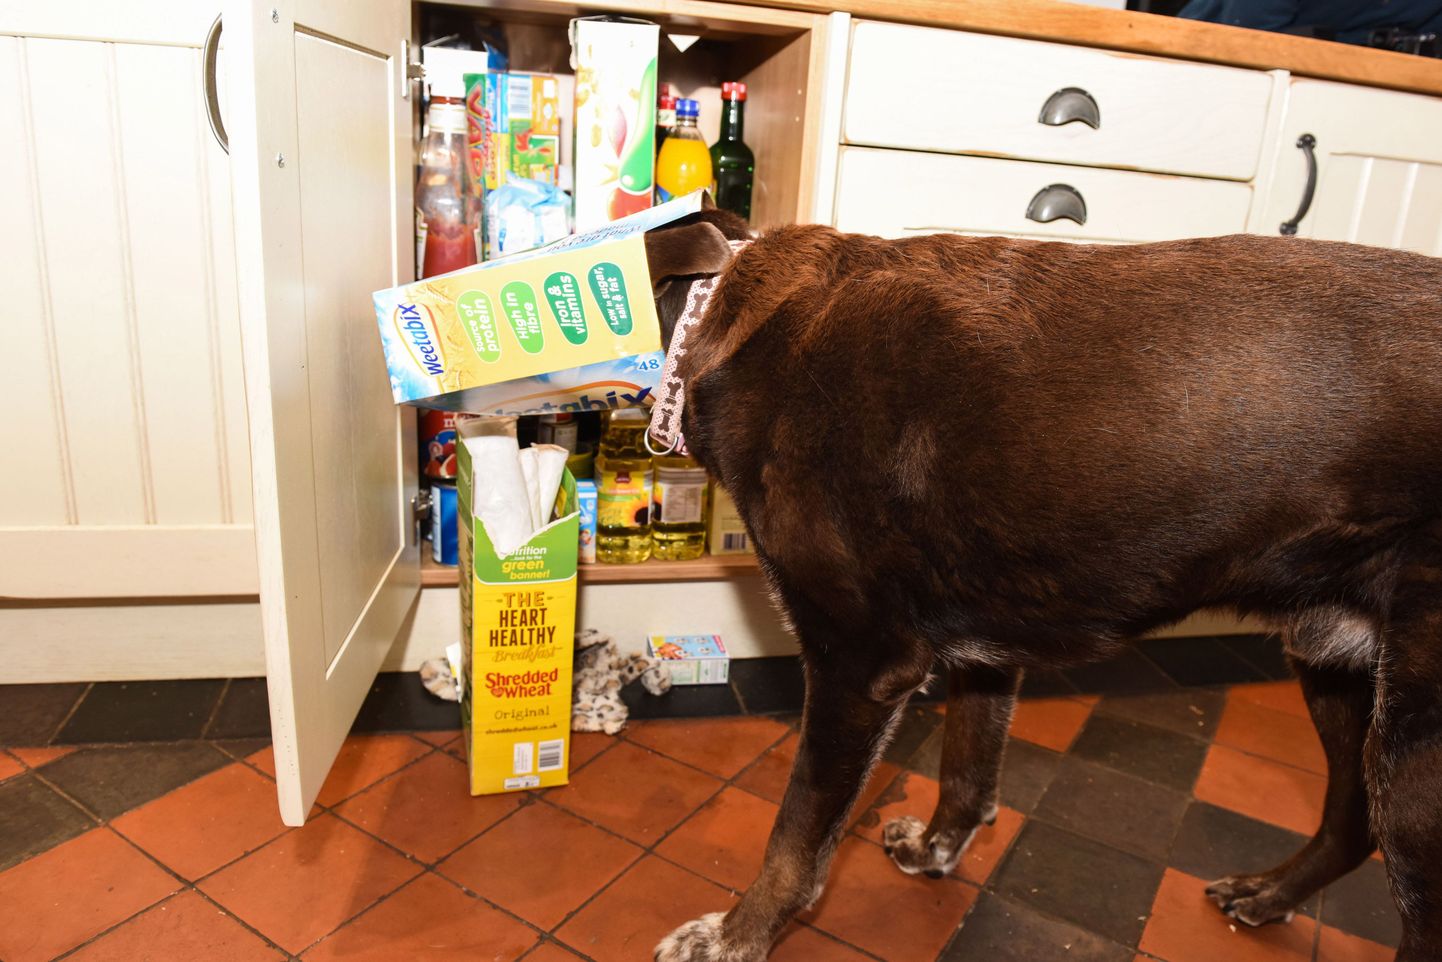 Labrador Lolo on õppinud laualt, kapist ja külmutuskapist toitu varastama ning toitub nii nagu seda ei tohiks